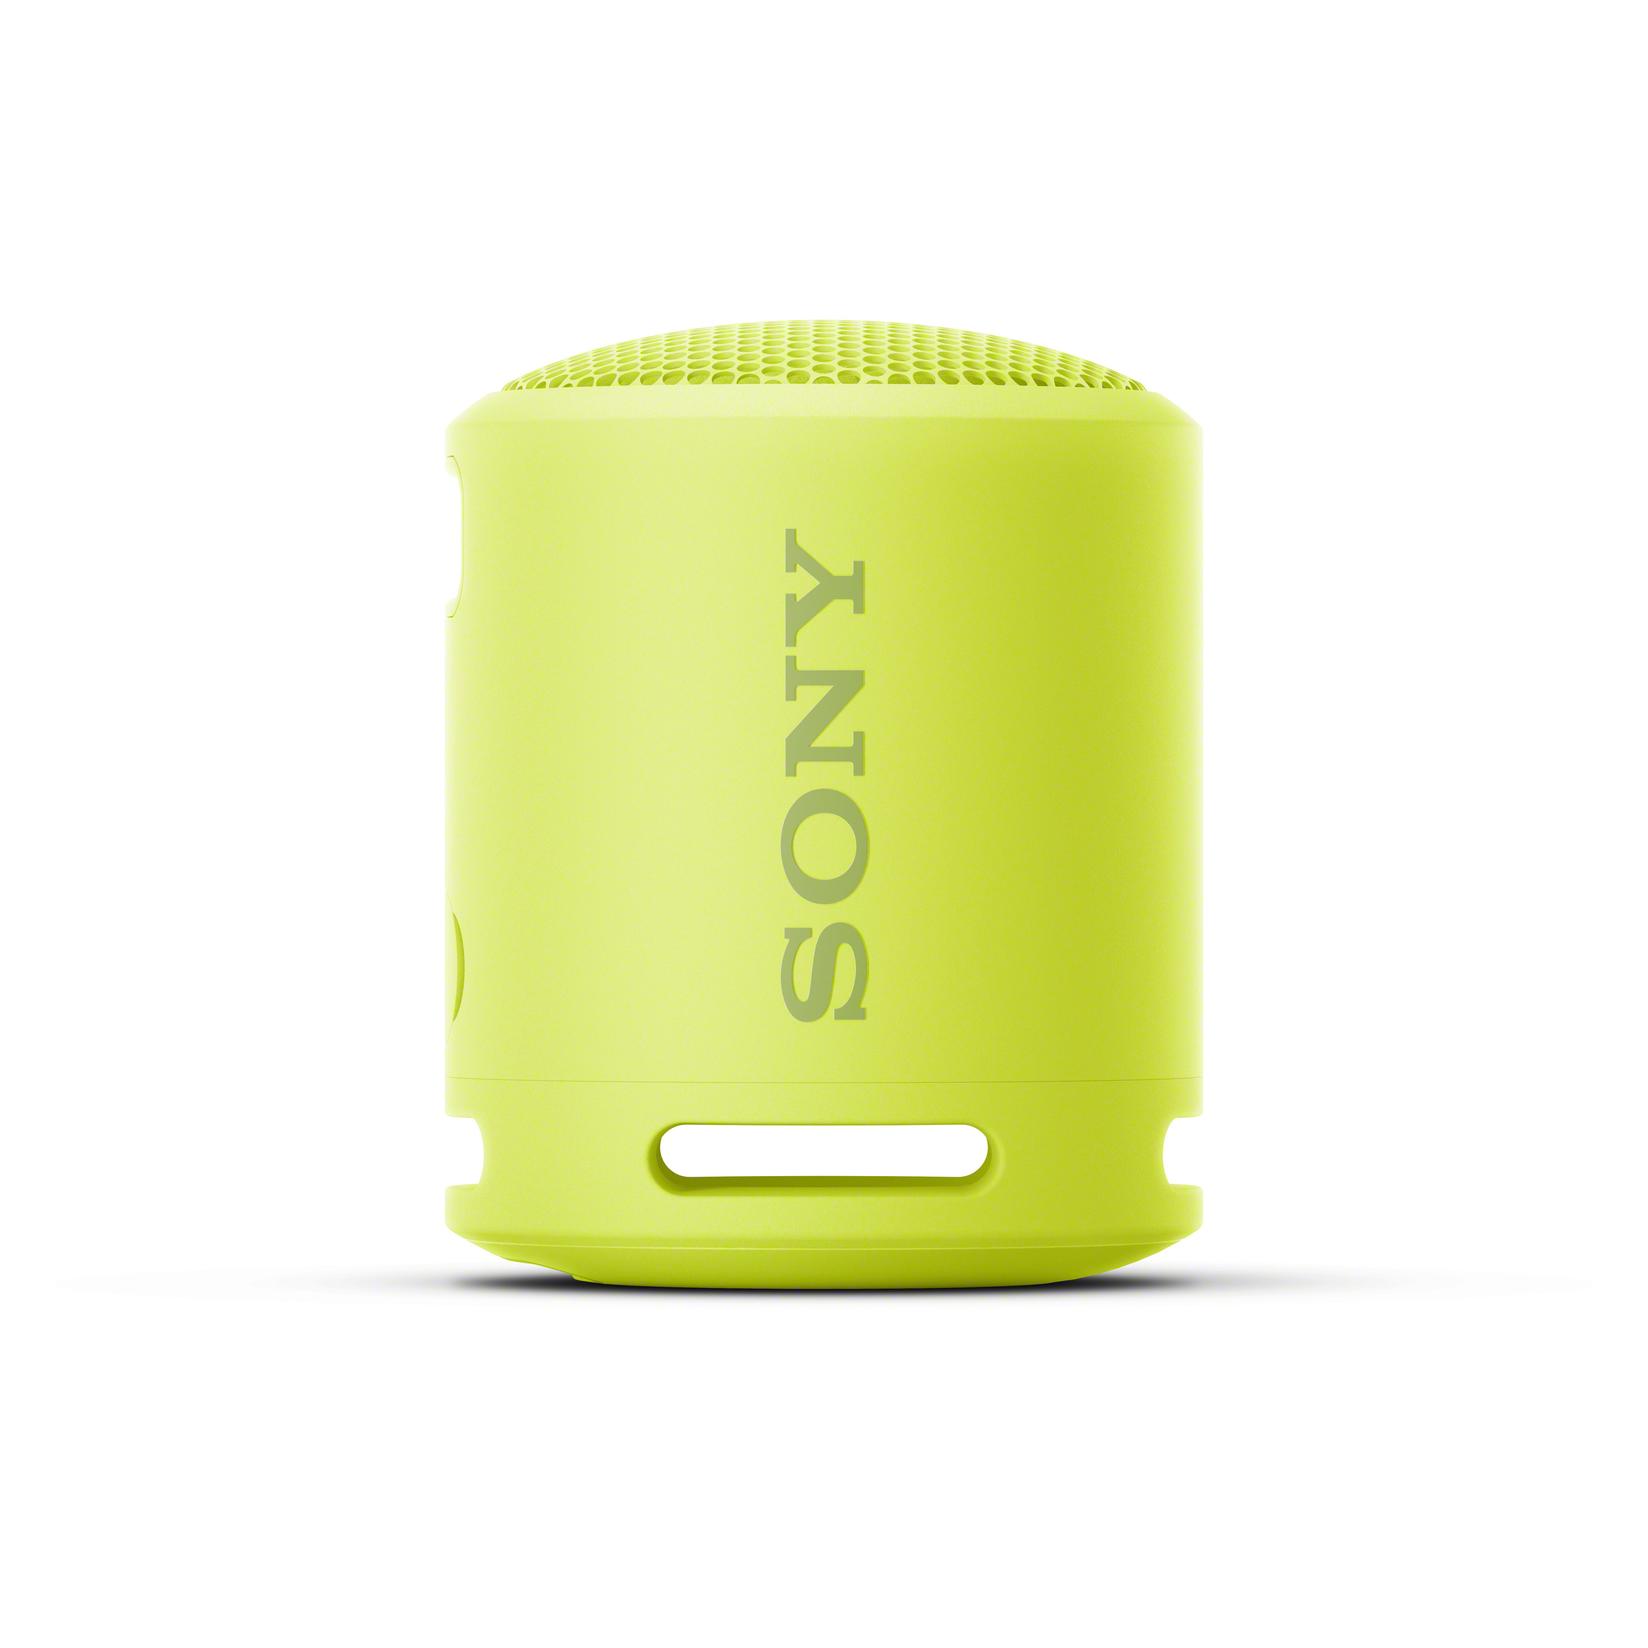 Sony SRSXB13 Prenosivi stereo zvučnici Žuto 5 W